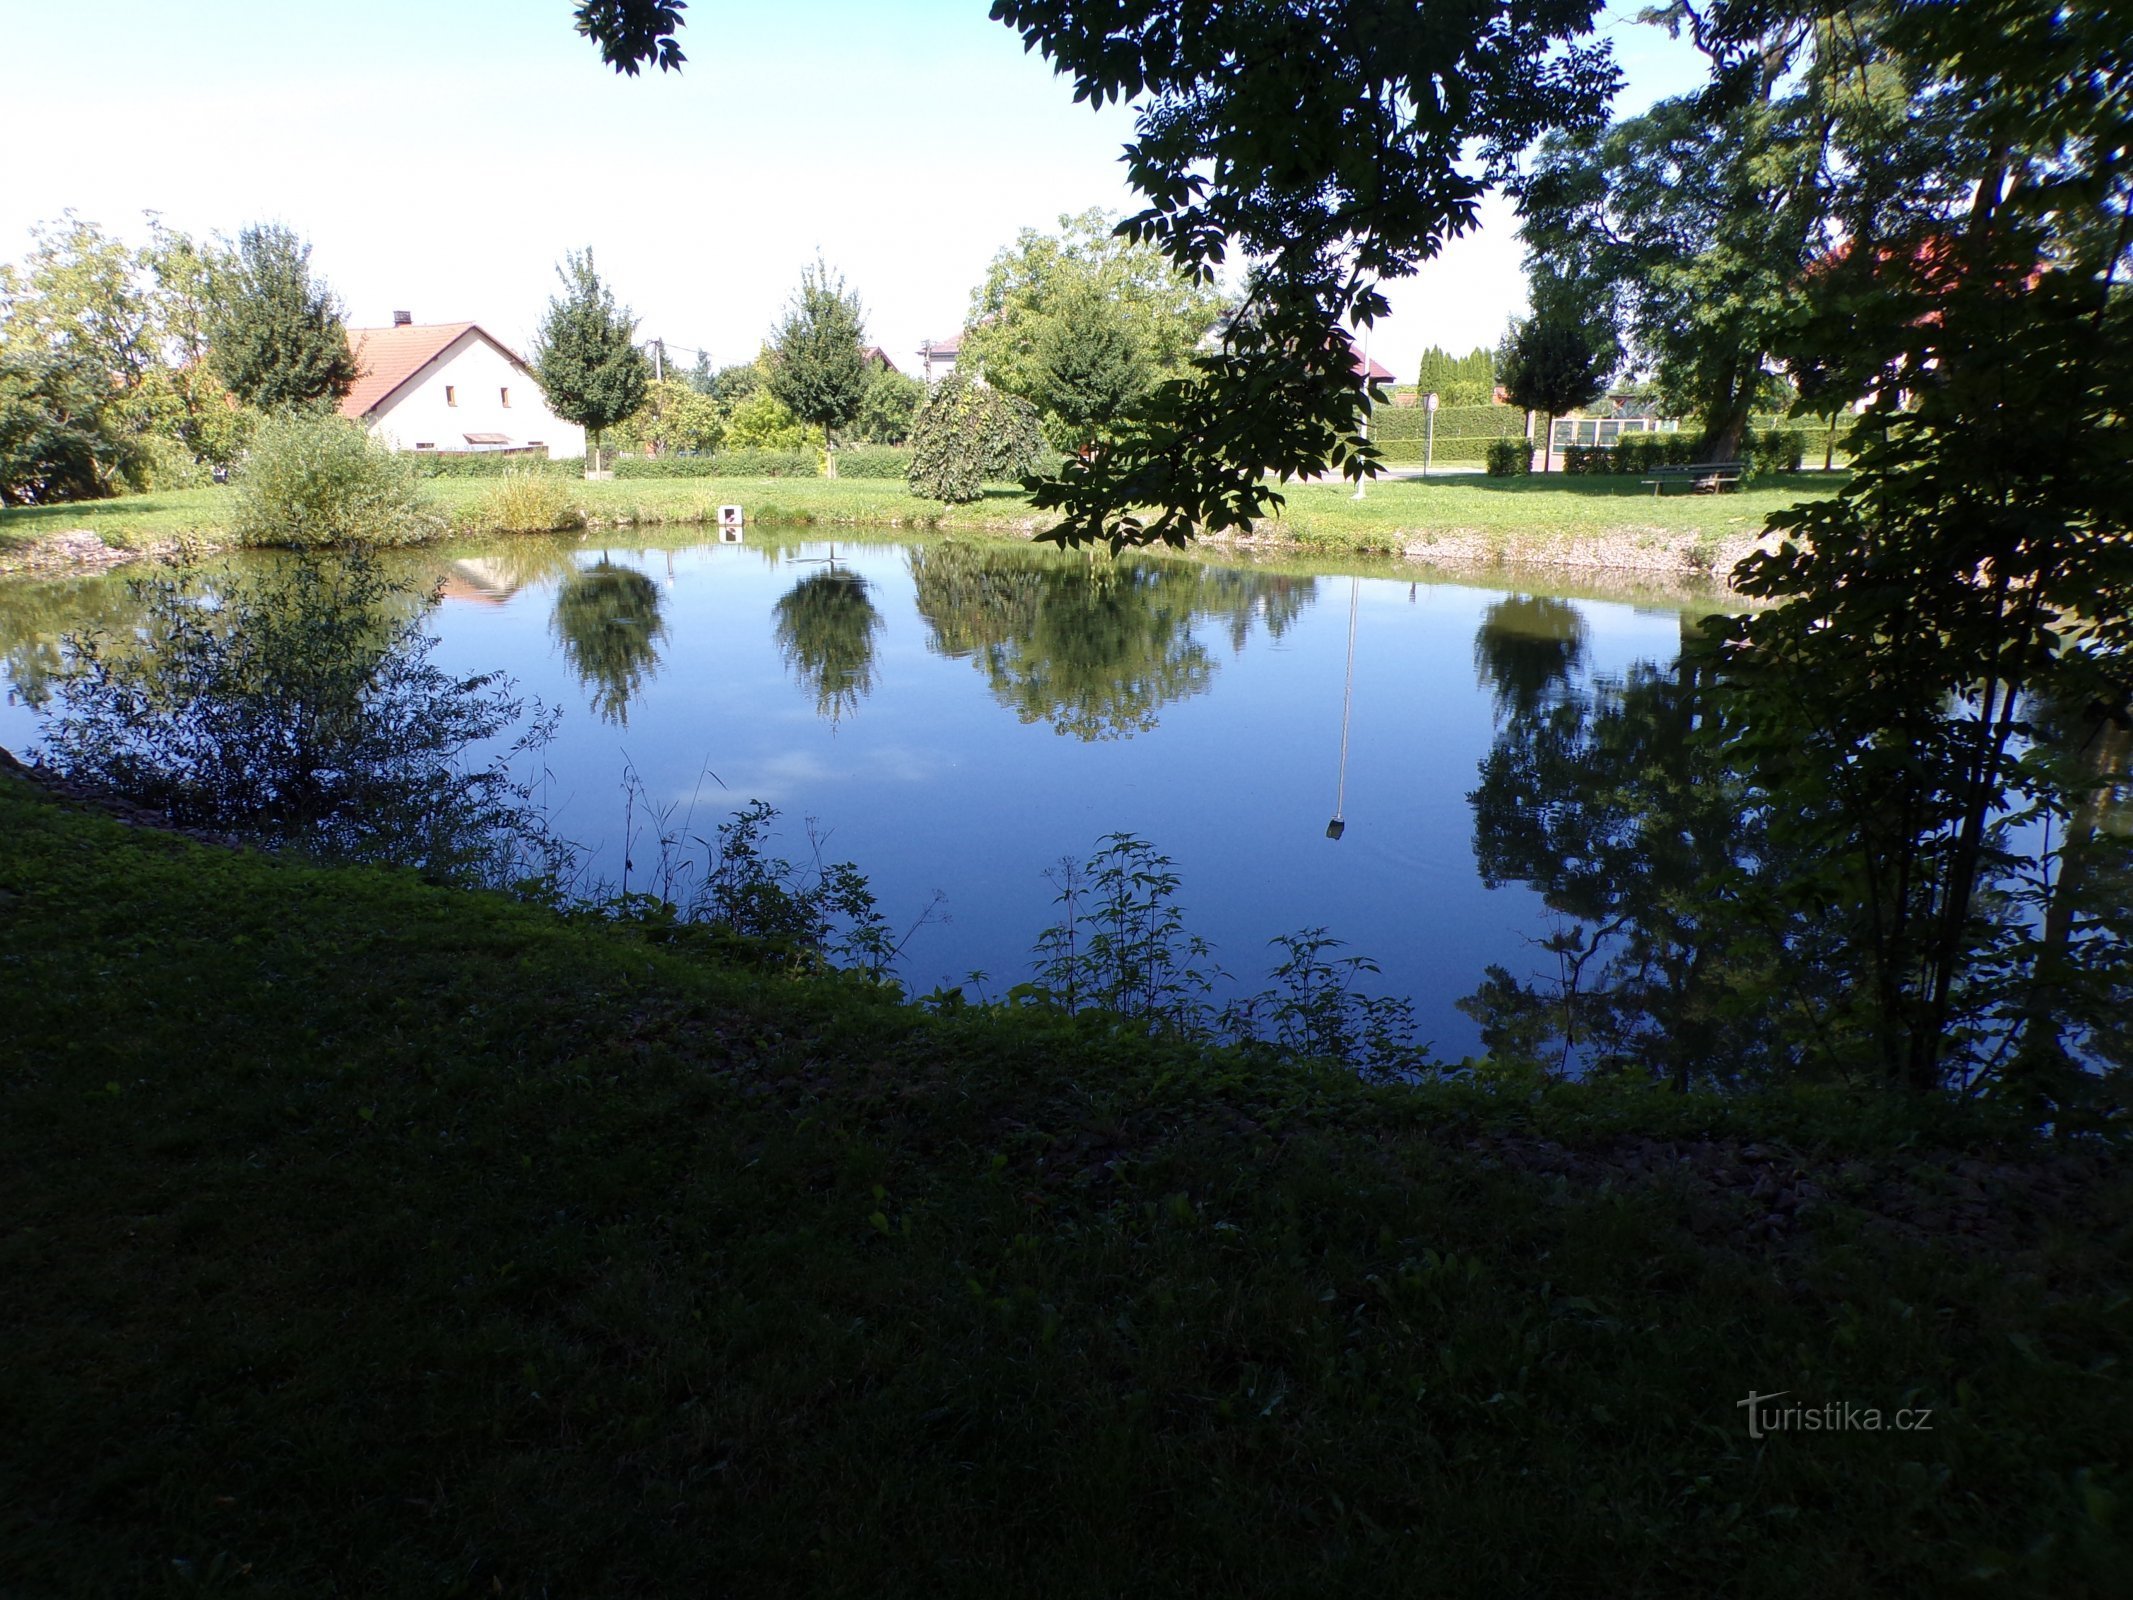 Lagoa perto do castelo (Dolní Přím, 15.8.2021/XNUMX/XNUMX)